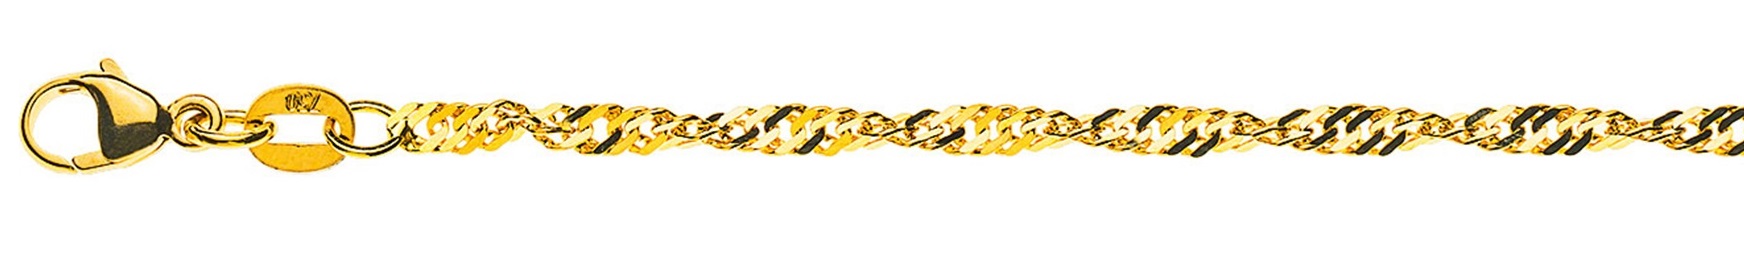 AURONOS Prestige Yellow Gold 18K Singapore Necklace 55cm 2.4mm